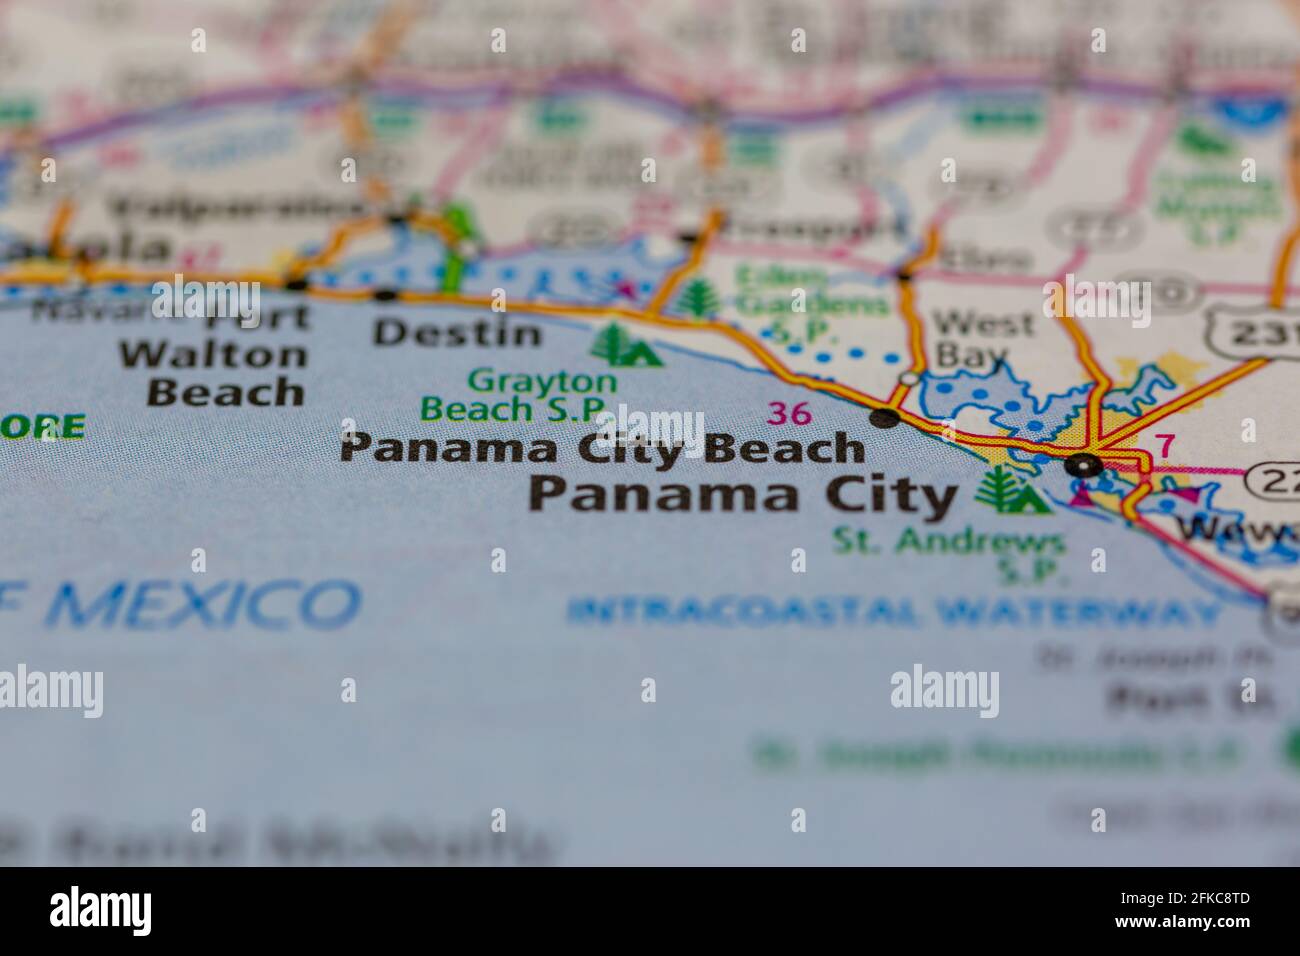 Panama City Beach Florida USA mostrato su una mappa geografica o mappa stradale Foto Stock